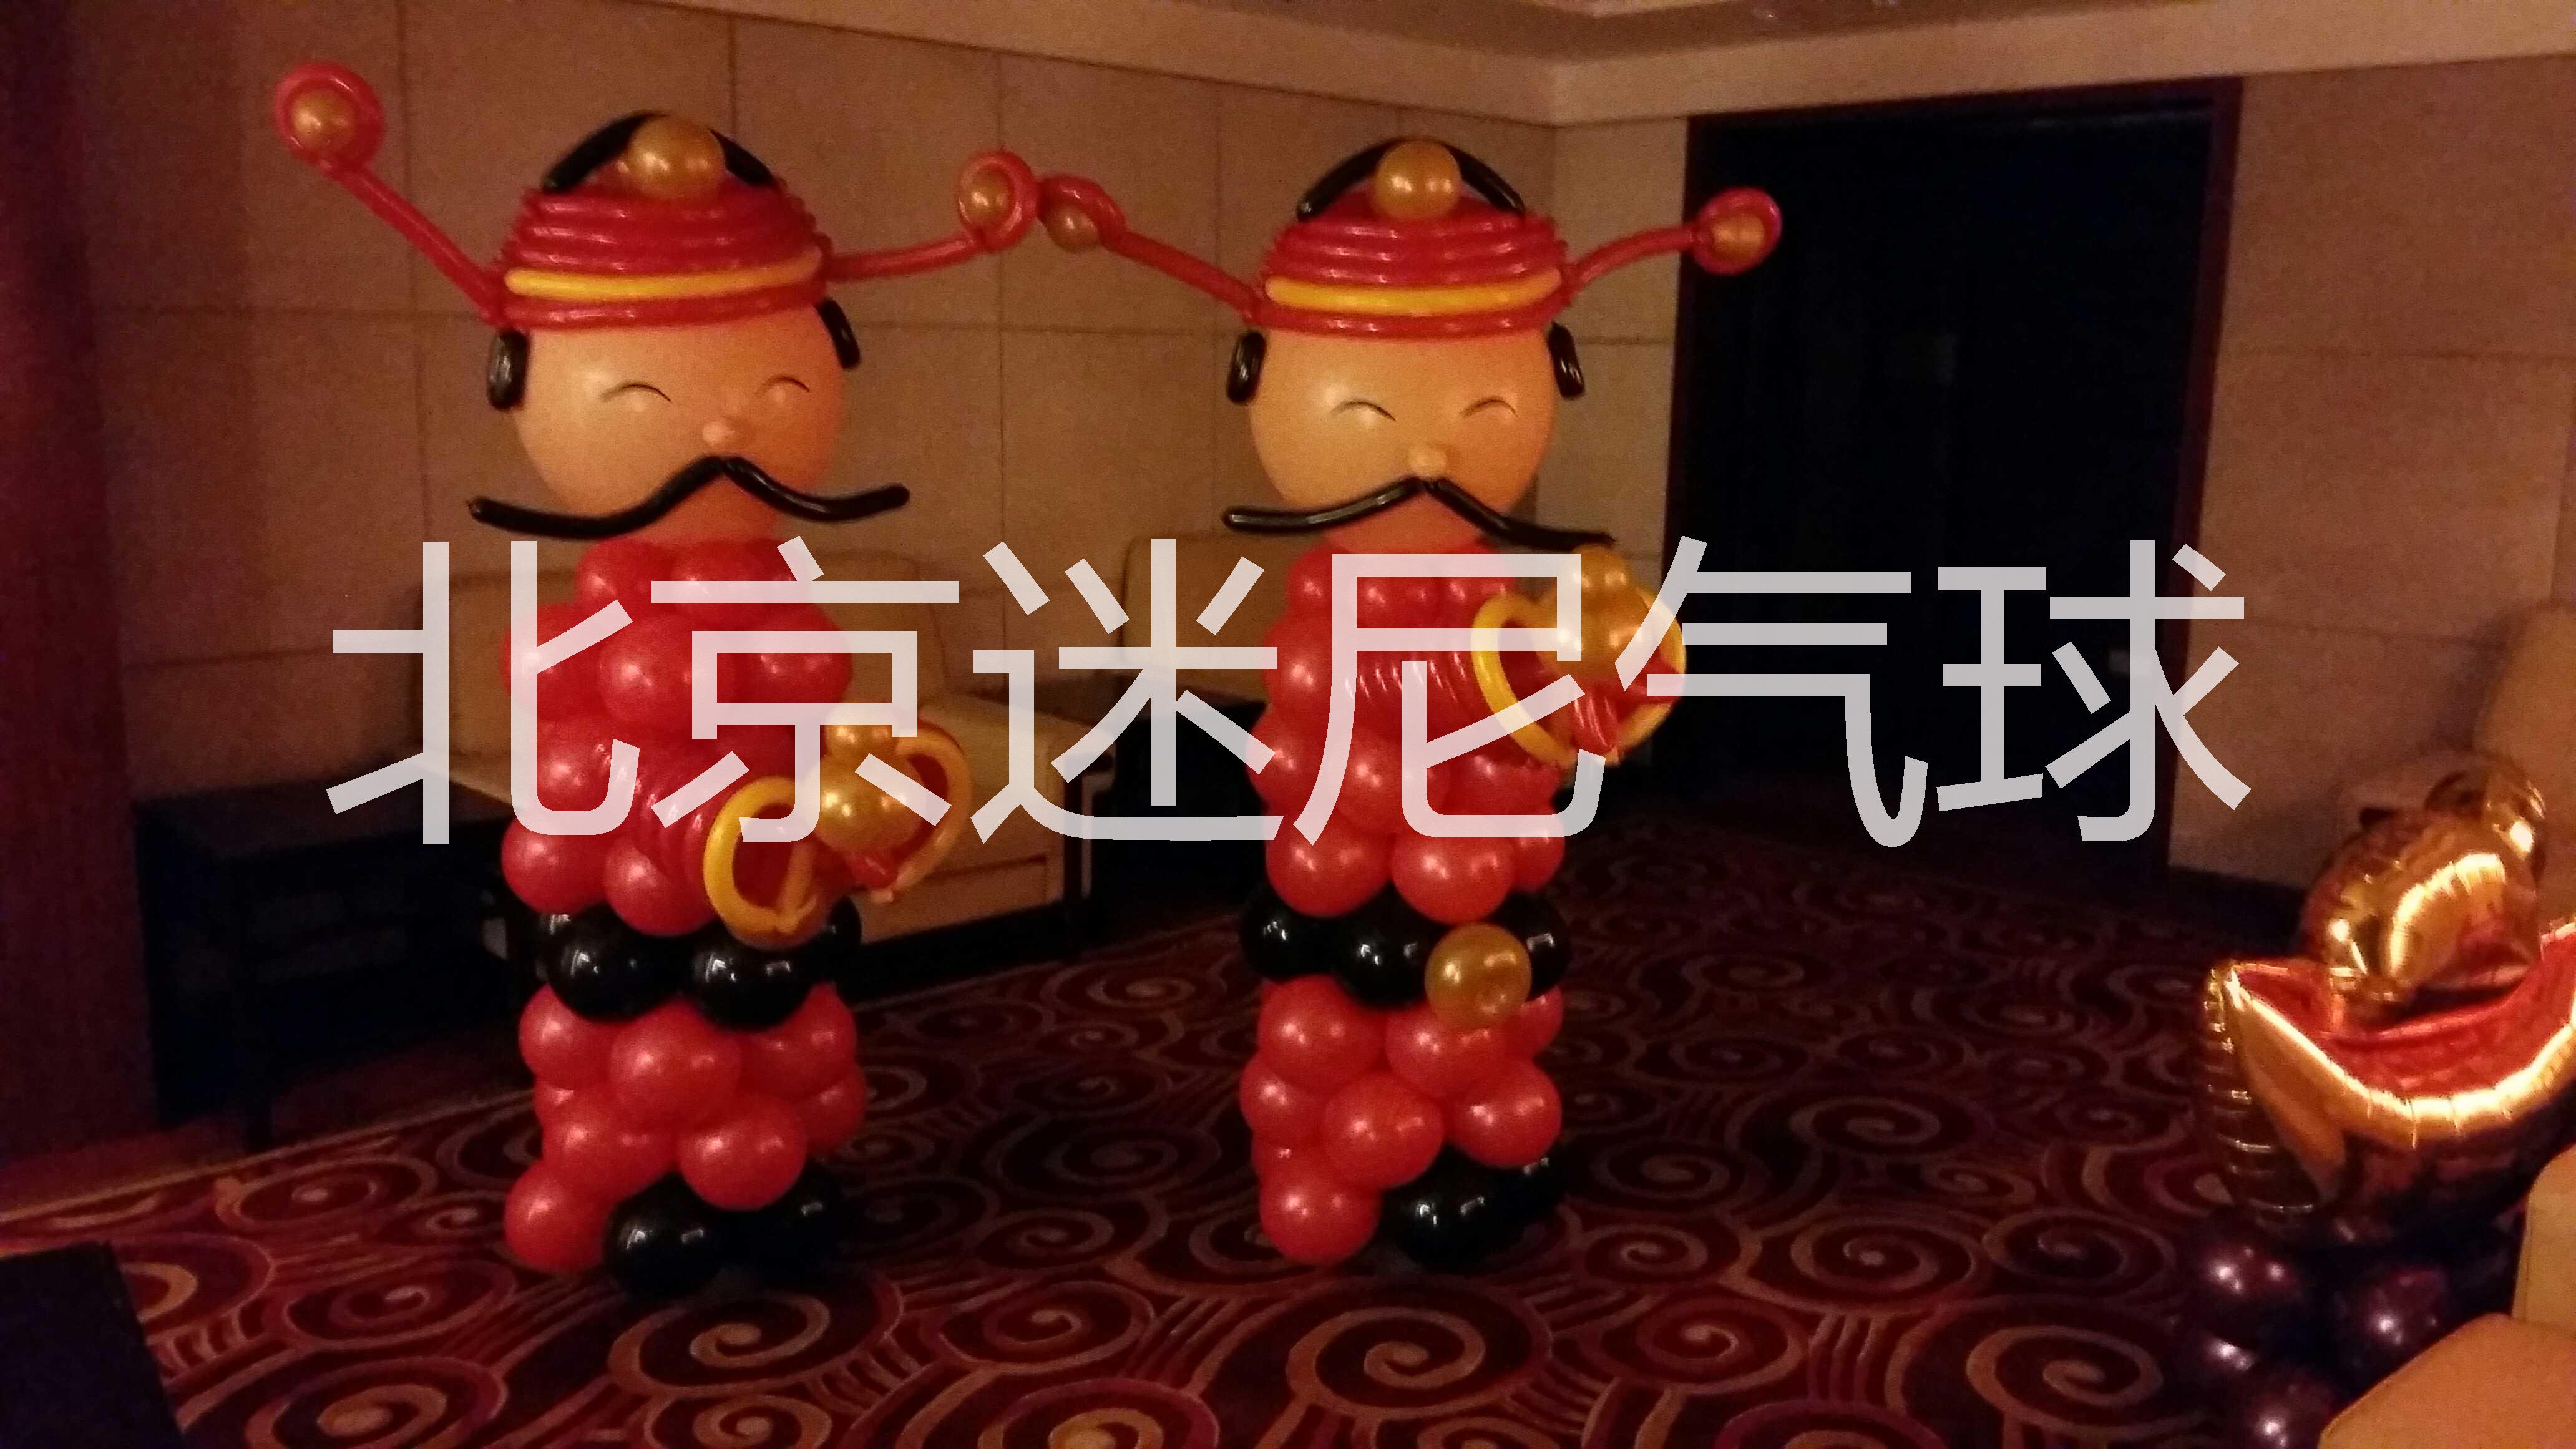 北京宝宝满月百天生日派对气球装饰 儿童怕气球装饰 婚房气球装饰布置 生日派对气球装饰